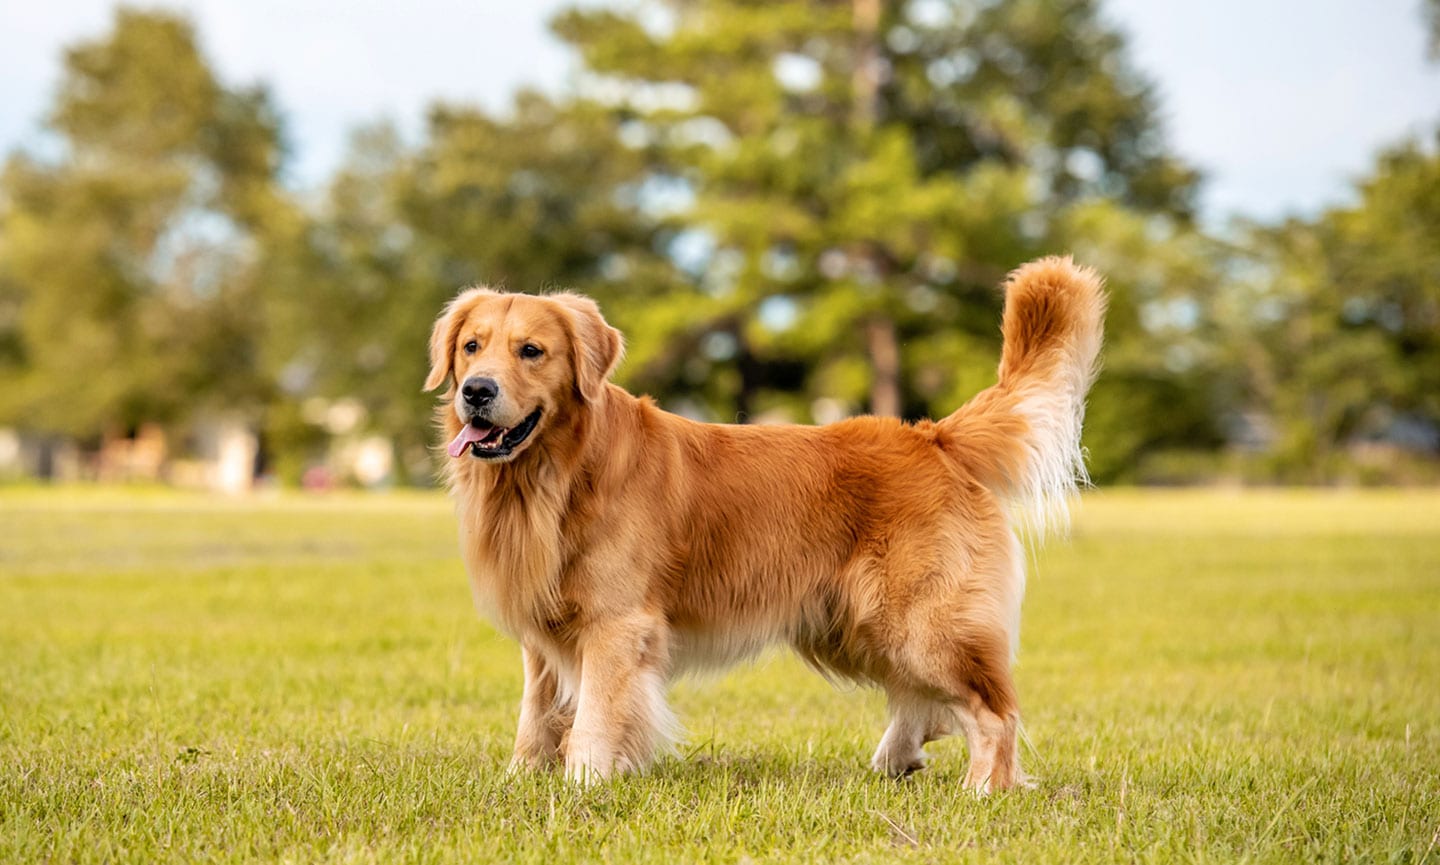 smartest dog breeds - golden retriever